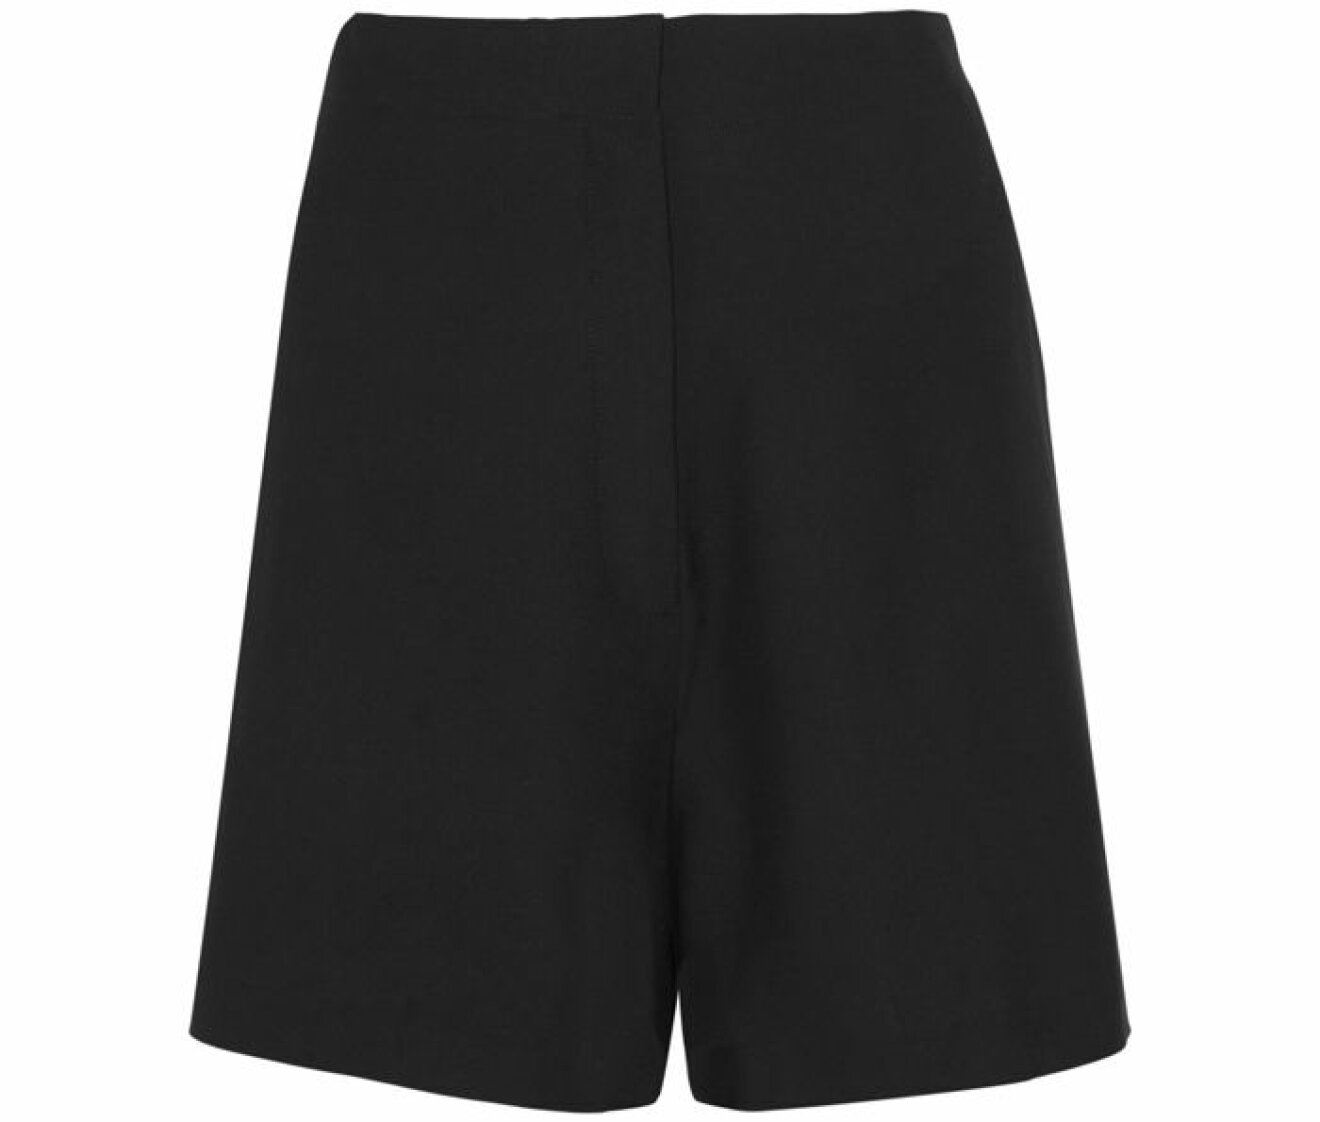 9. Shorts, 2411 kr, Acne stuios Net-a-porter.com